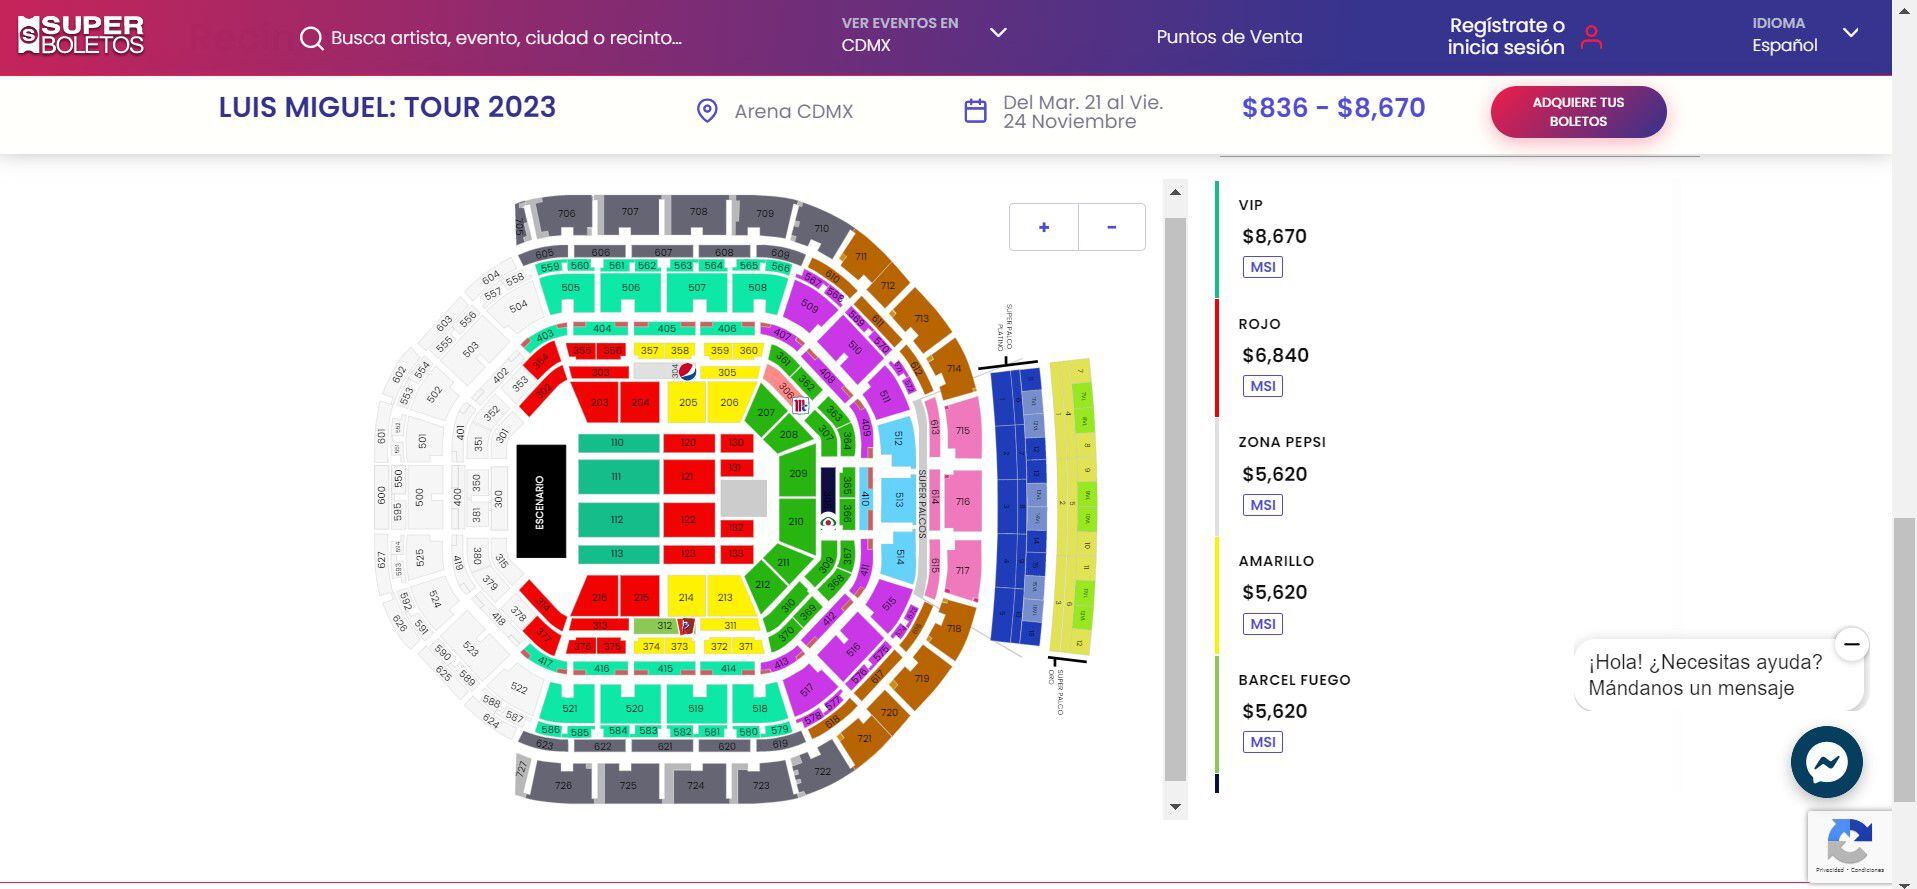 Mapa y precios de los boletos para ver a Luis Miguel en la Arena CDMX. (Foto: Superboletos)